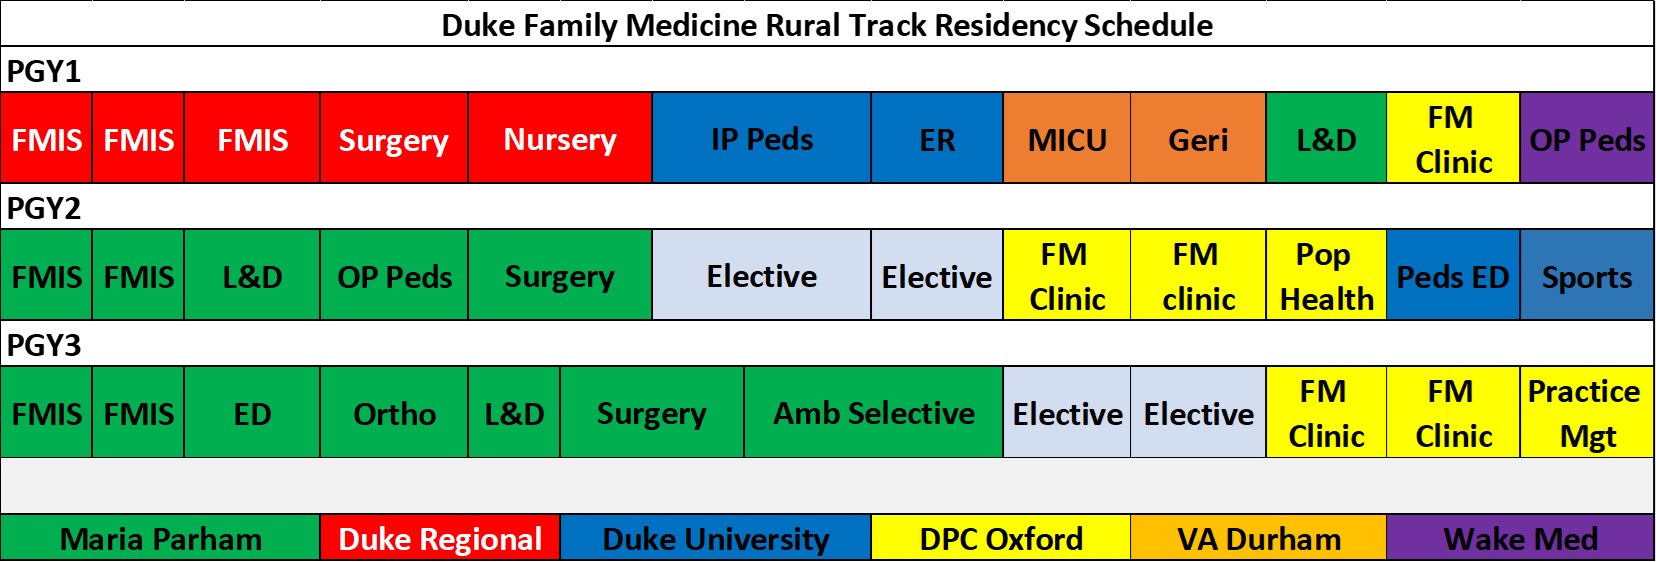 Rural Track Residency Schedule